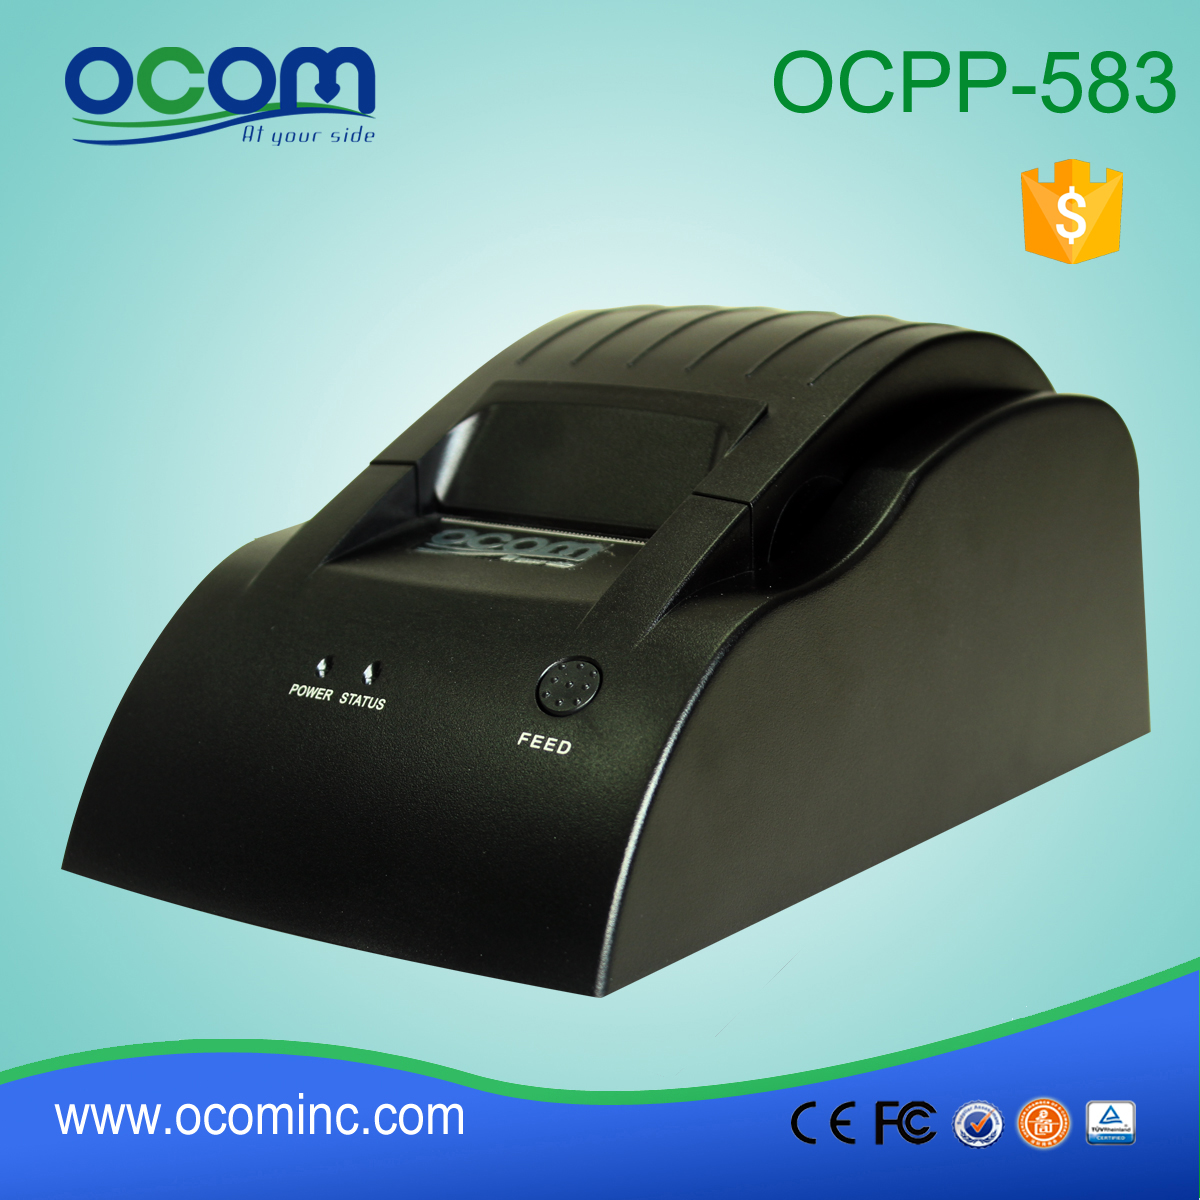 OCPP-583-P 58mm POS Termiczna drukarka biletów kwitowych 36p Port równoległy